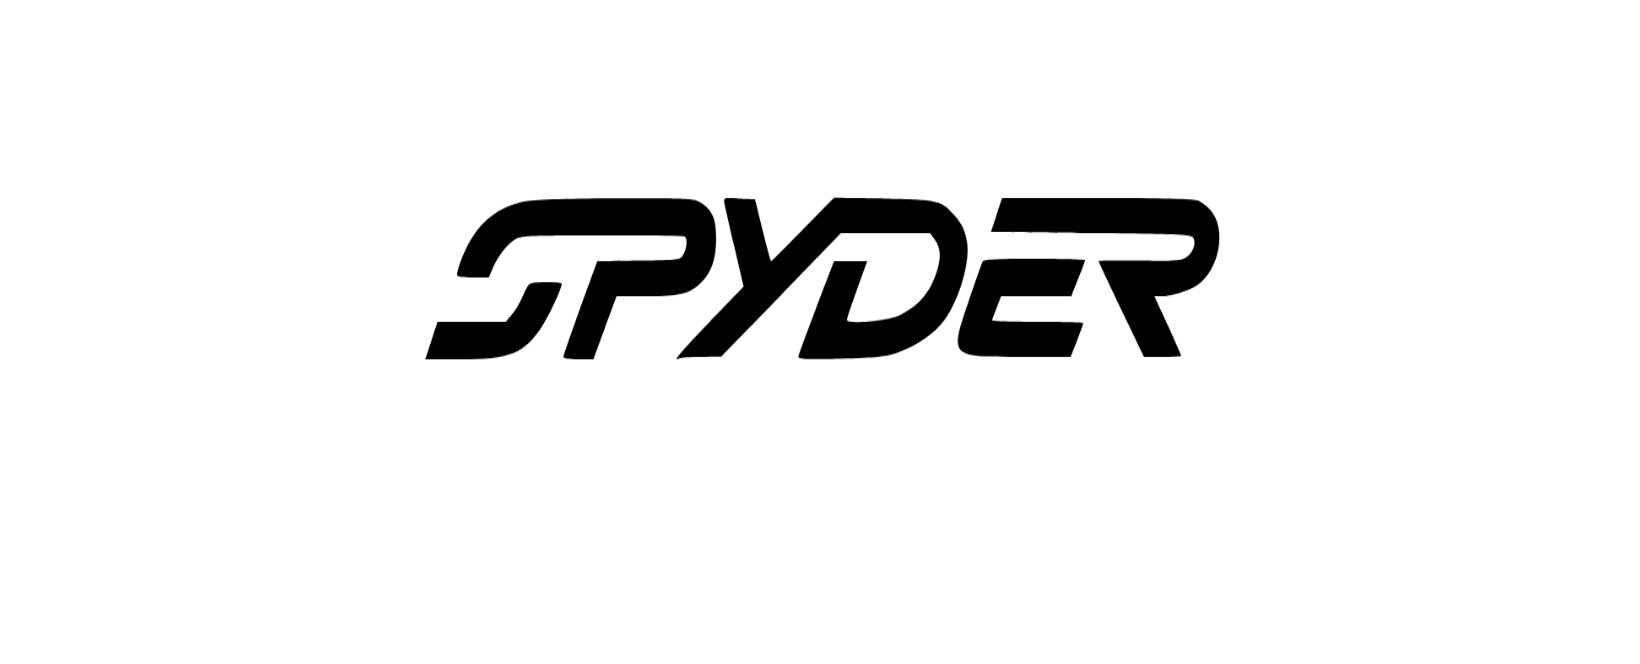 Spyder Discount Code 2022